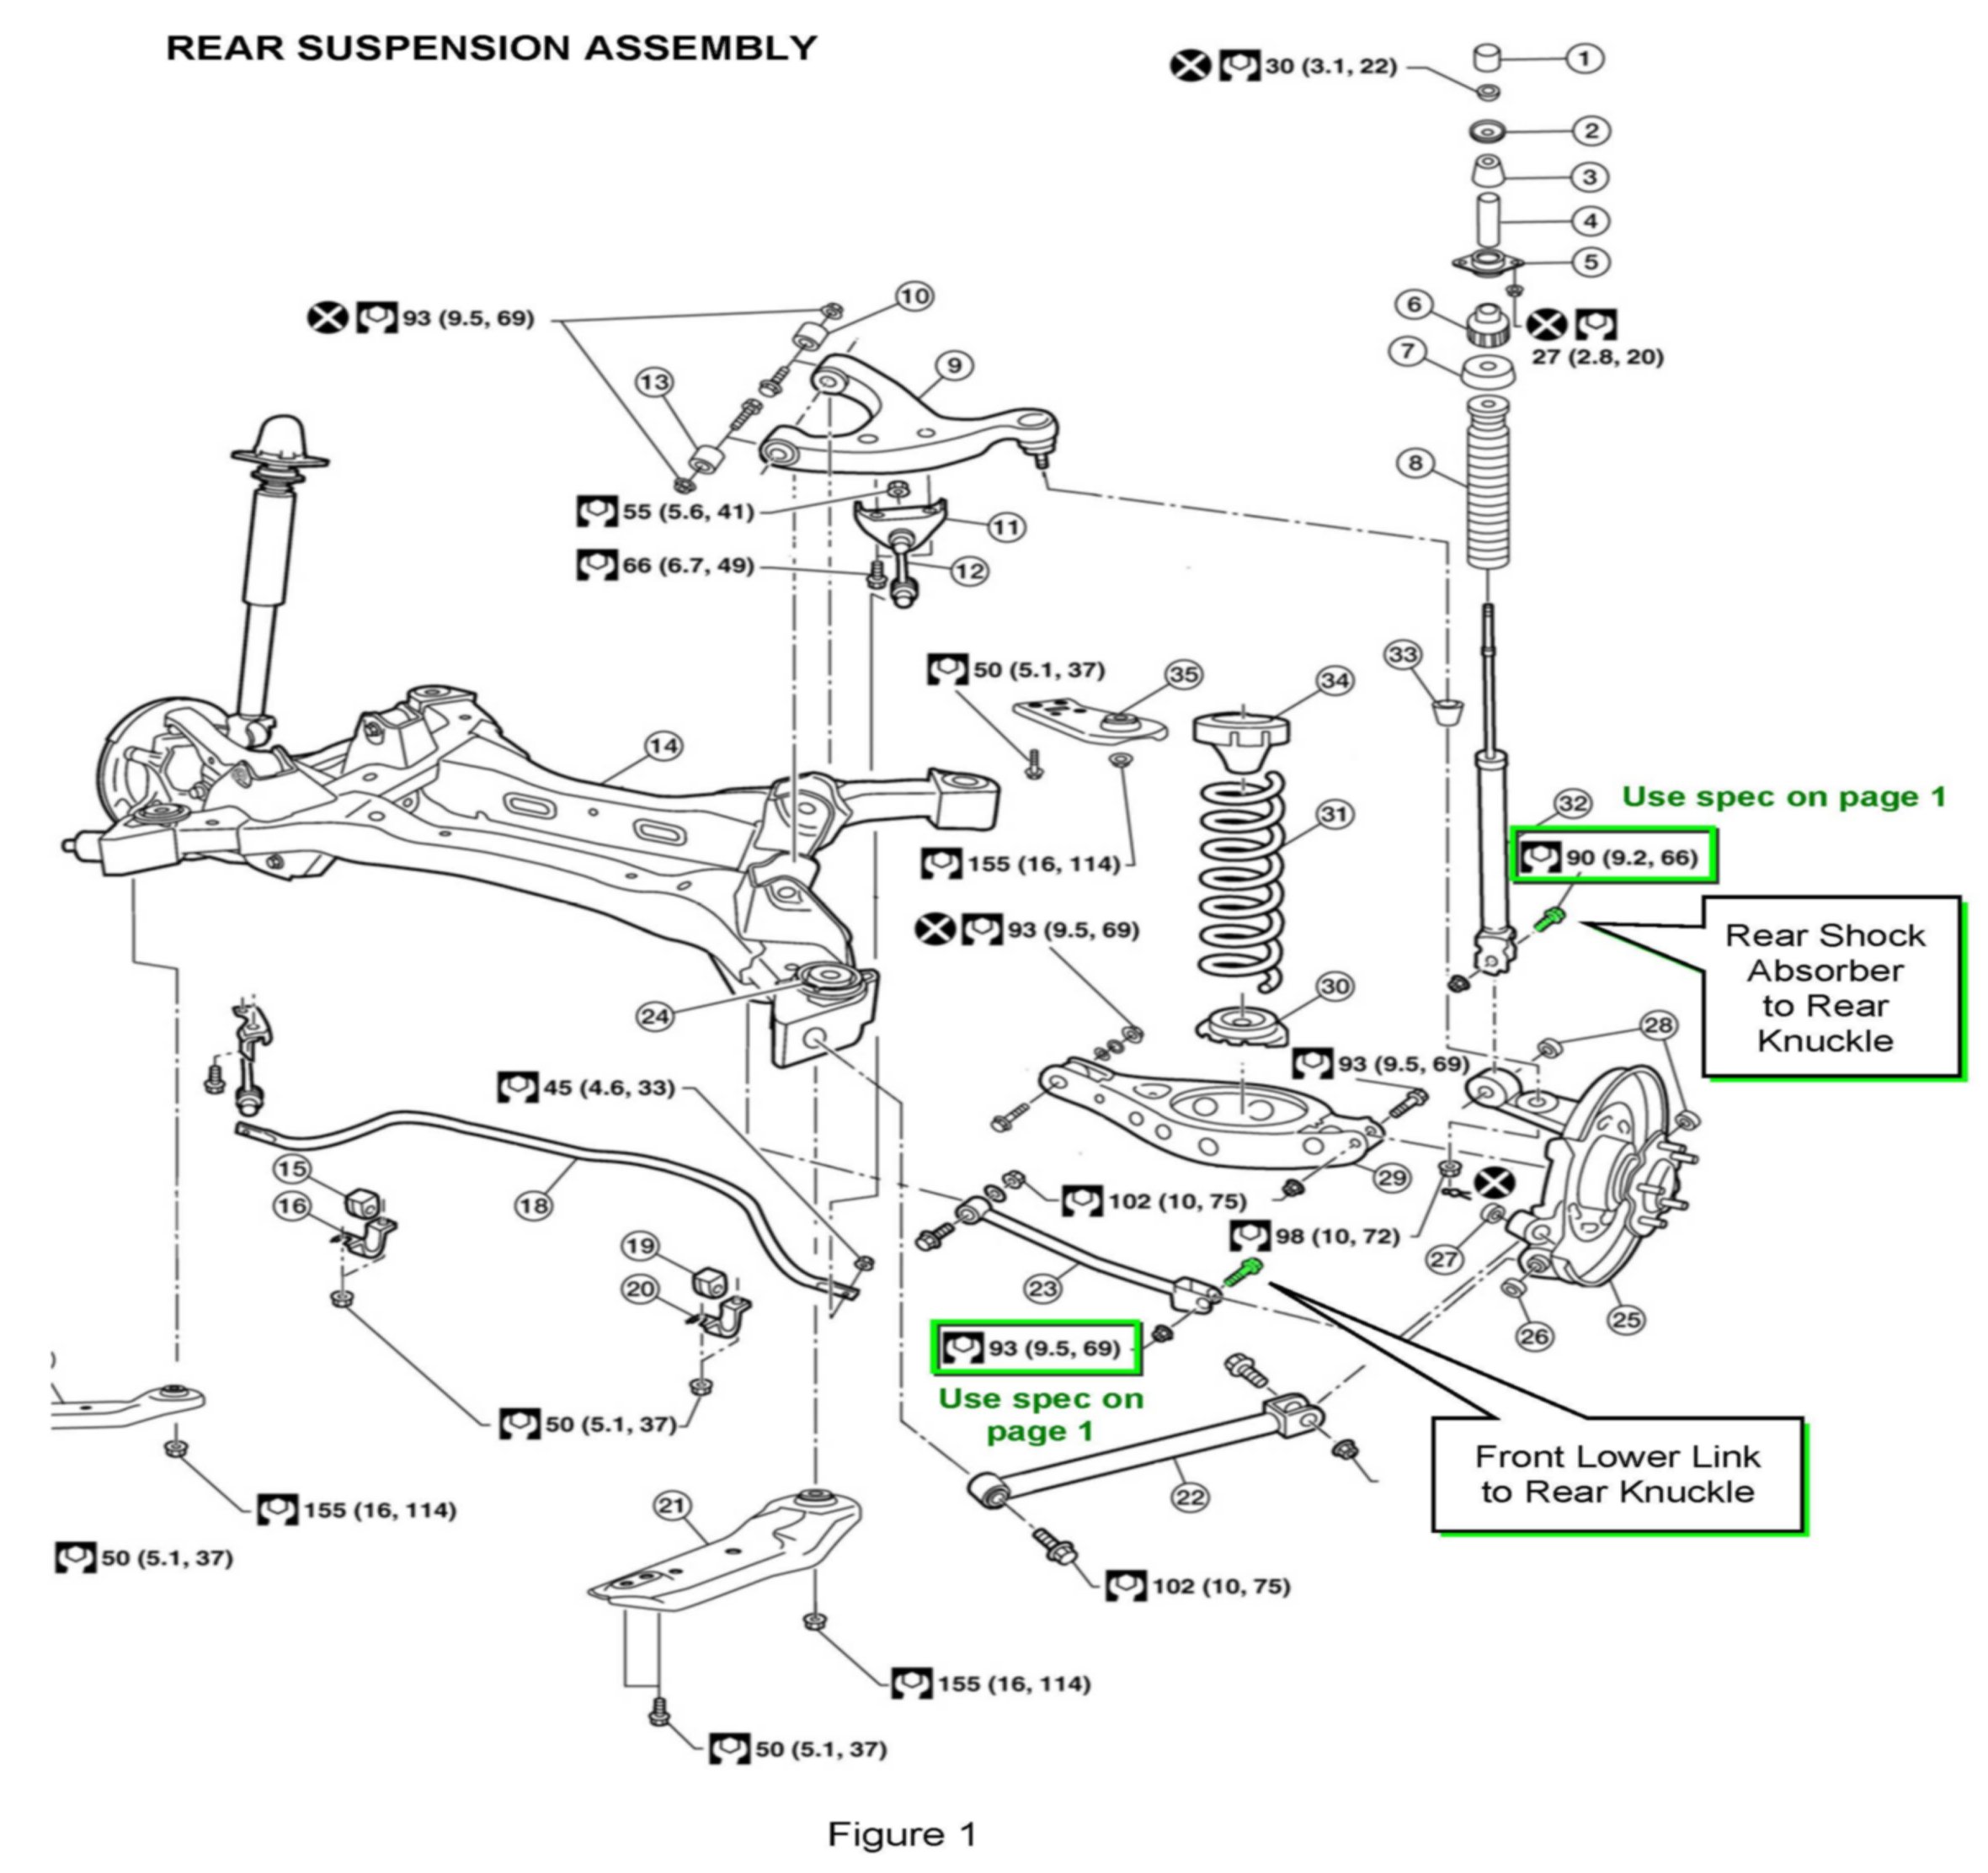 ALLDATAdiy.com - 2009 Nissan-Datsun Altima V6-3.5L (VQ35DE ... a35 engine diagram 